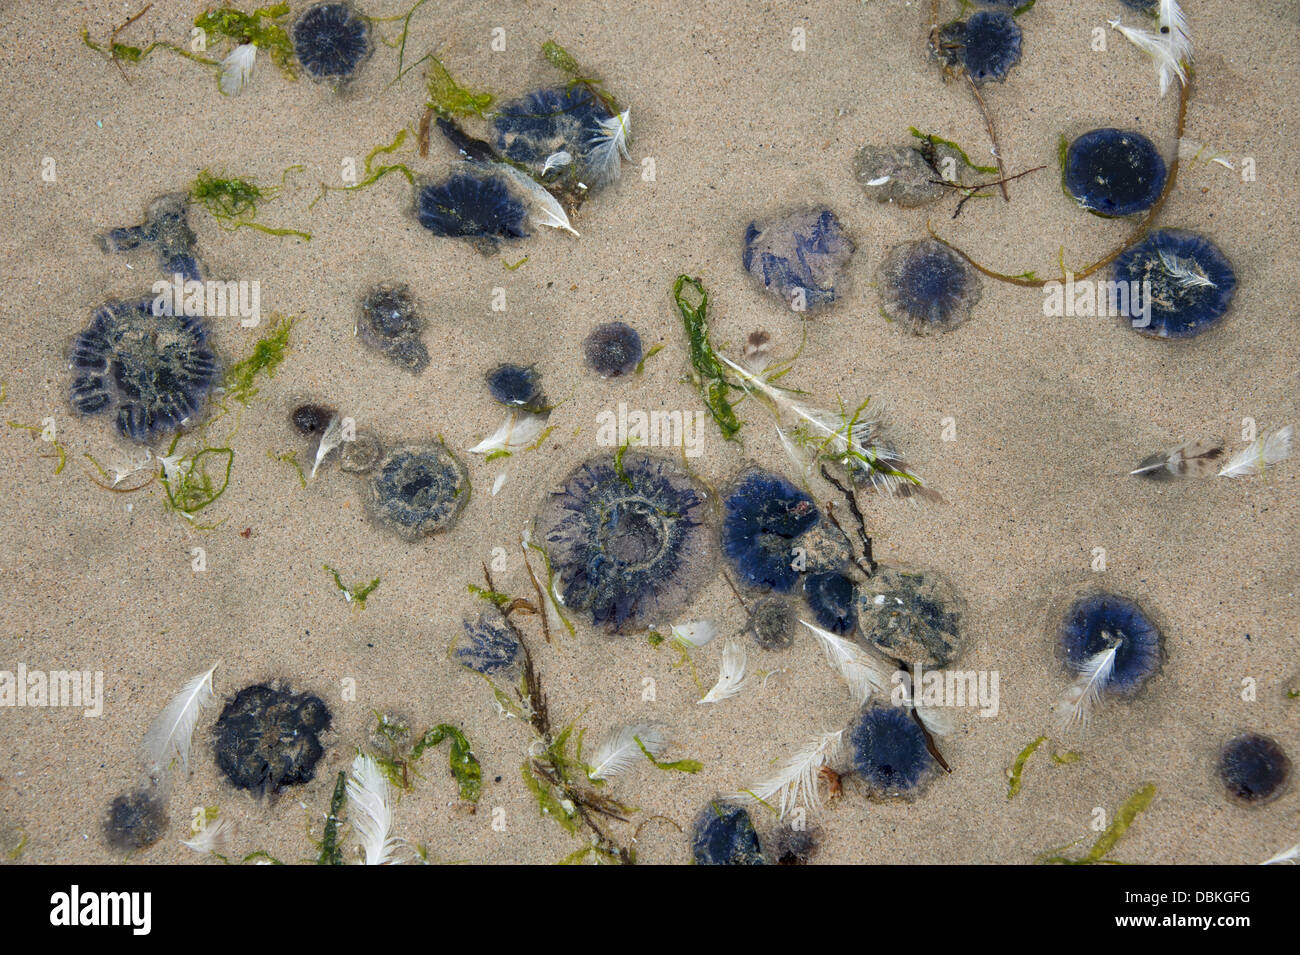 Polzeath, UK. 06Th Aug 2013. Les méduses sur la côte sur la baie à Polzeath Hayle en Cornouailles comme les températures chaudes de l'été semblent prêts à faire un retour bienvenu. Jeudi 1er août 2013 Crédit : pictureditor/Alamy Live News Banque D'Images